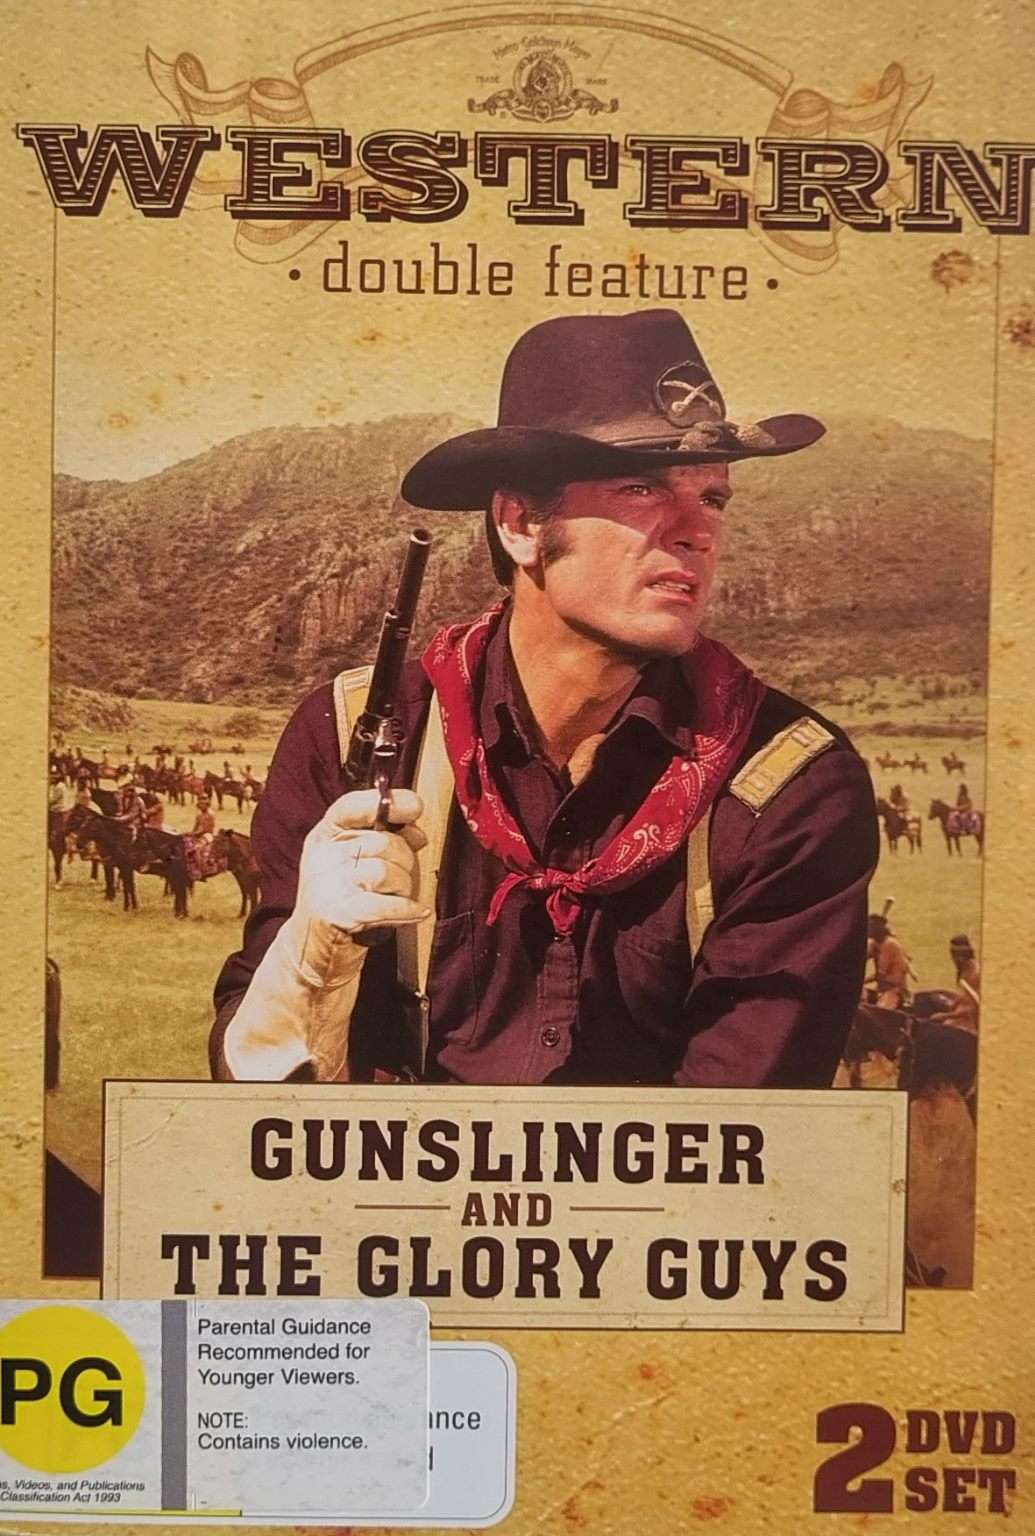 Gunslinger / The Glory Guys 2 Disc Set